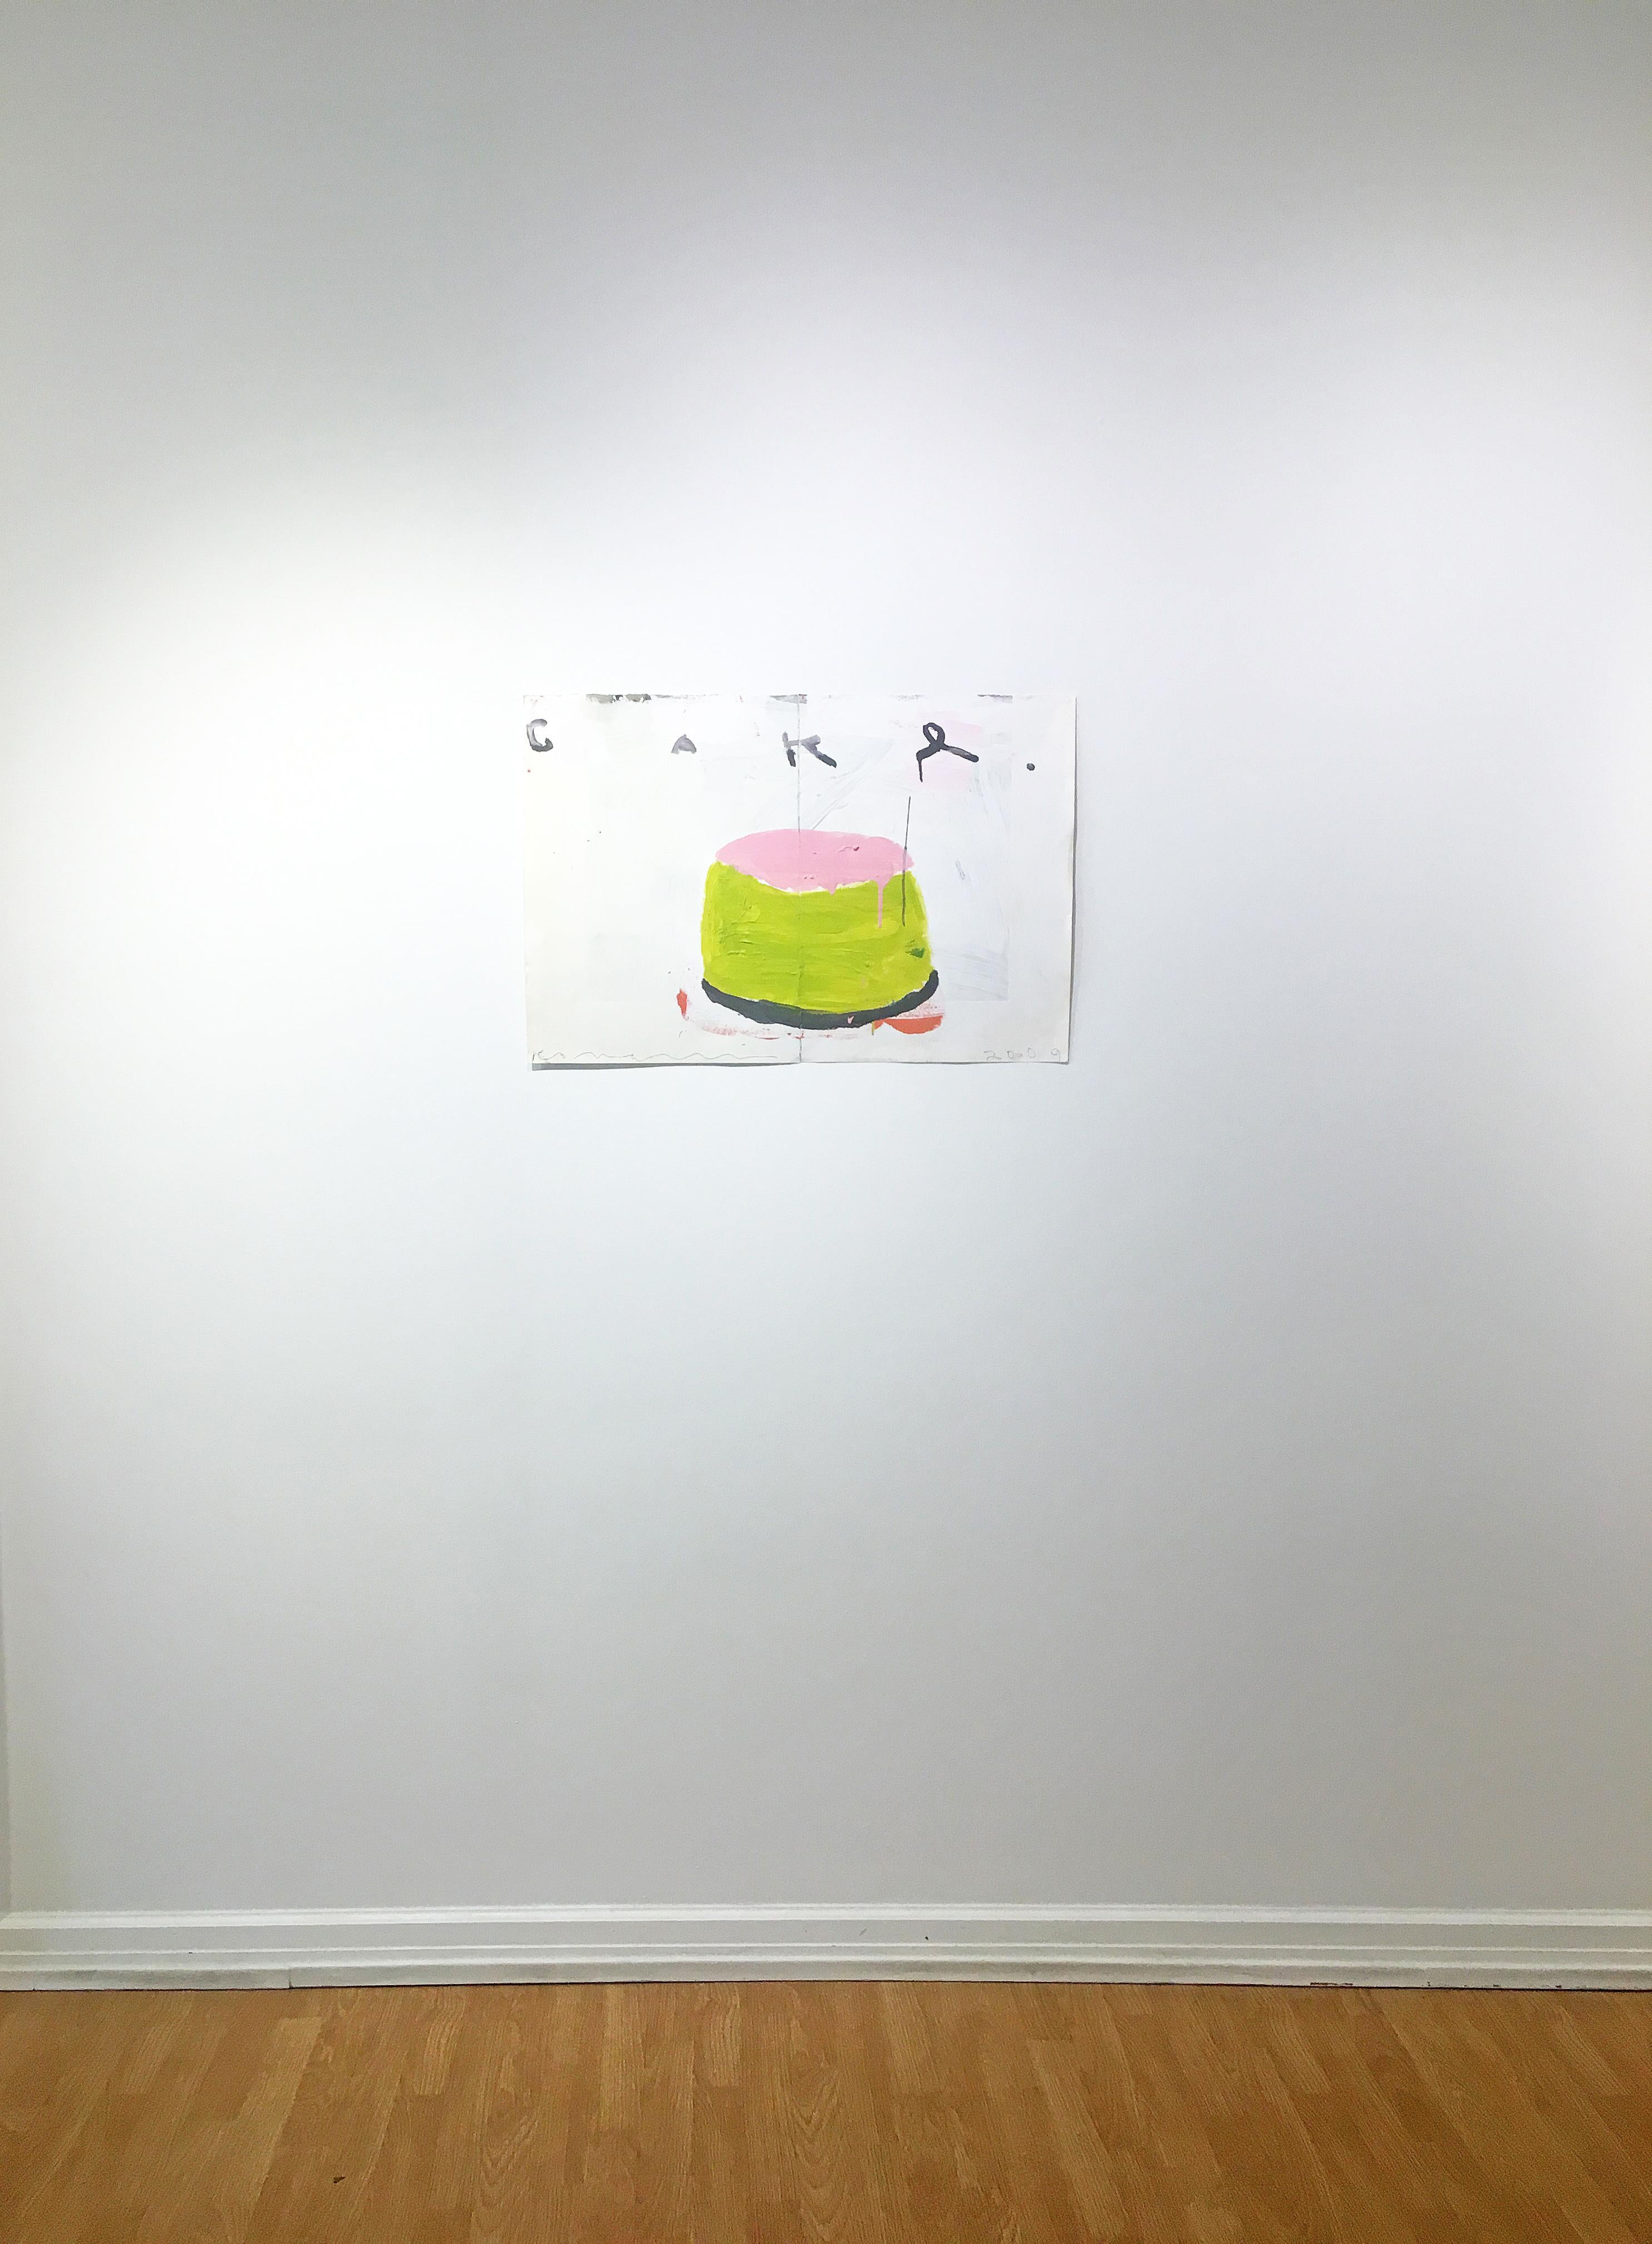 Mixed media painting of cake, Gary Komarin, Cake (Pink & Lime) 6